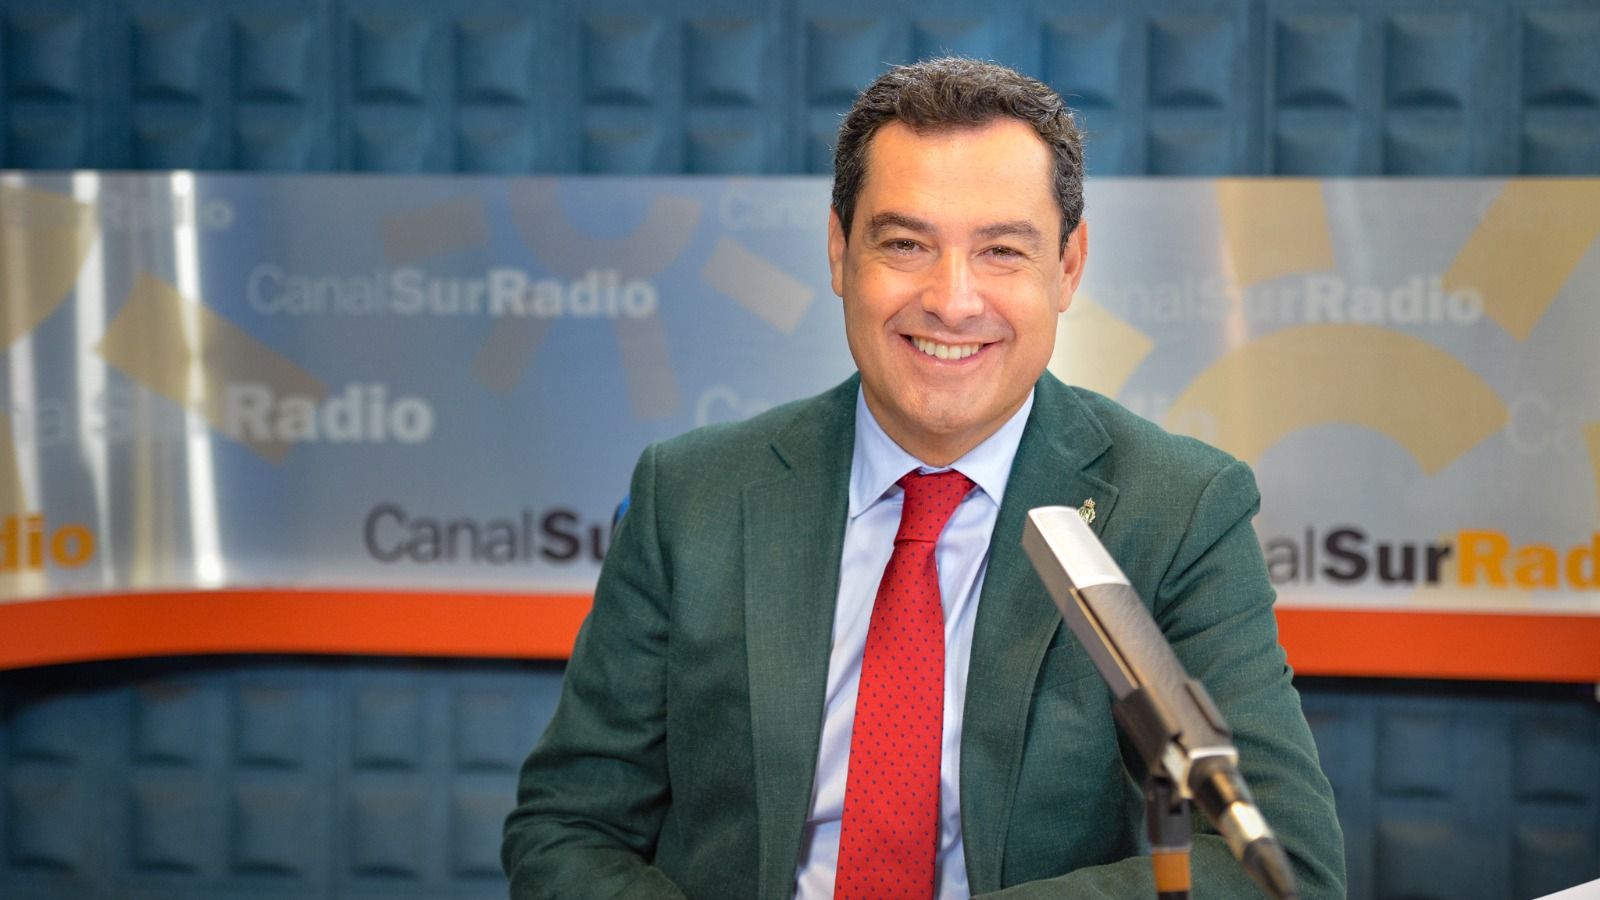 El presidente andaluz, Juan Manuel Moreno, en Canal Sur Radio hablando sobre el uso de la mascarilla en exteriores.